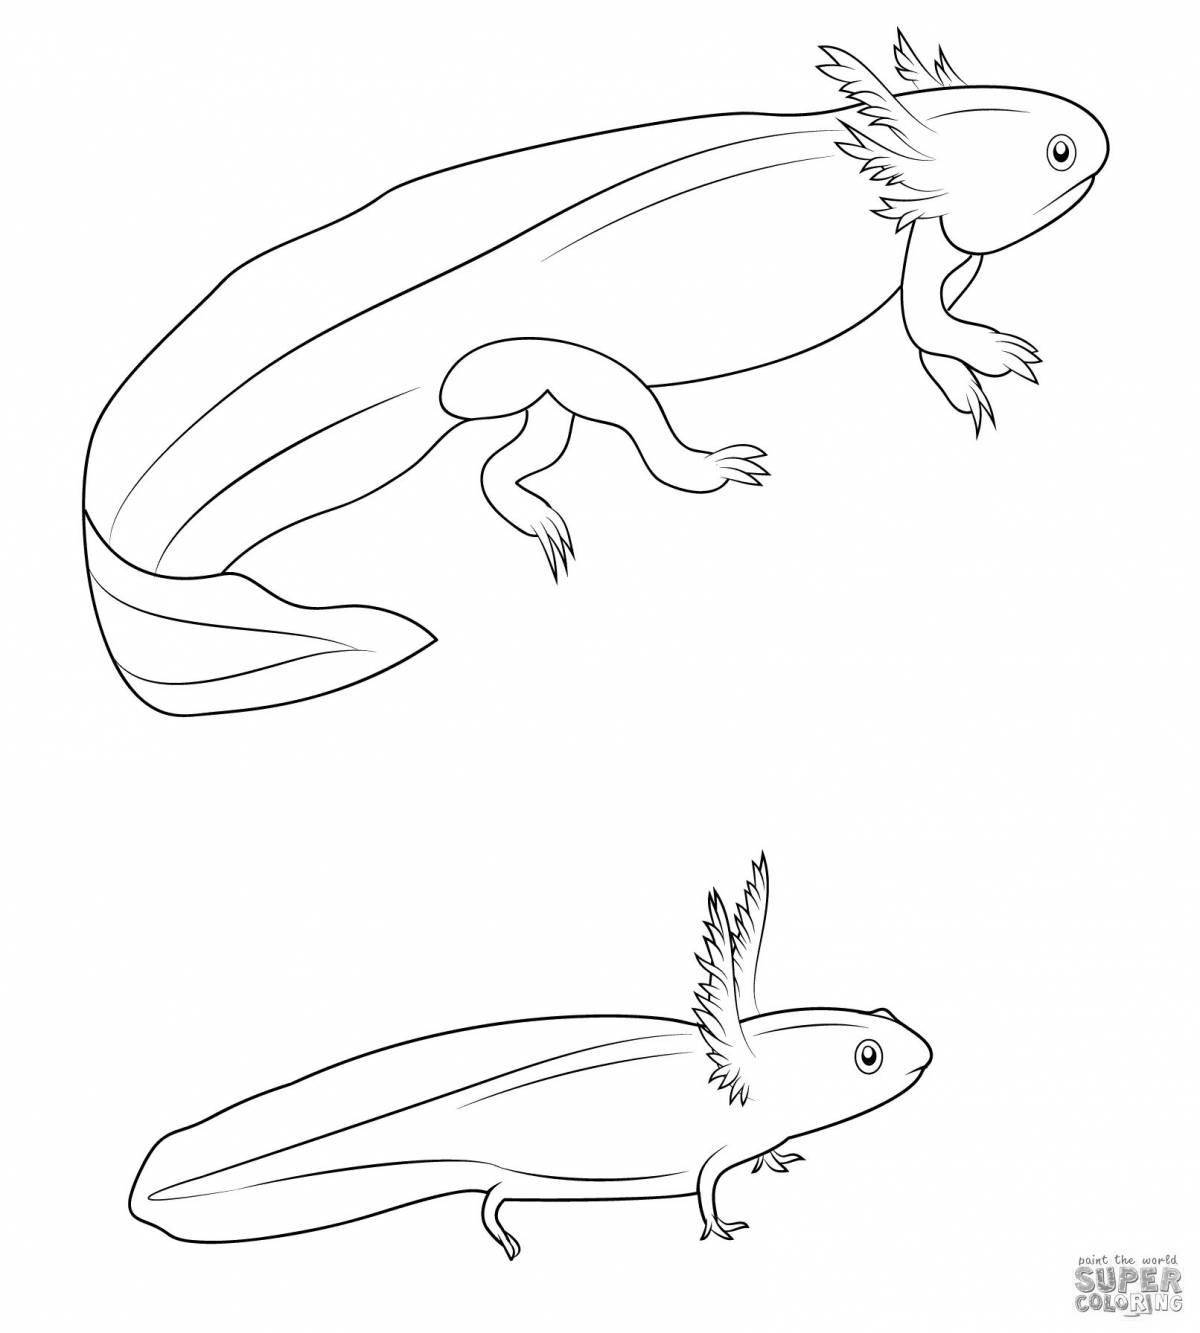 Creative axolotl coloring book for kids